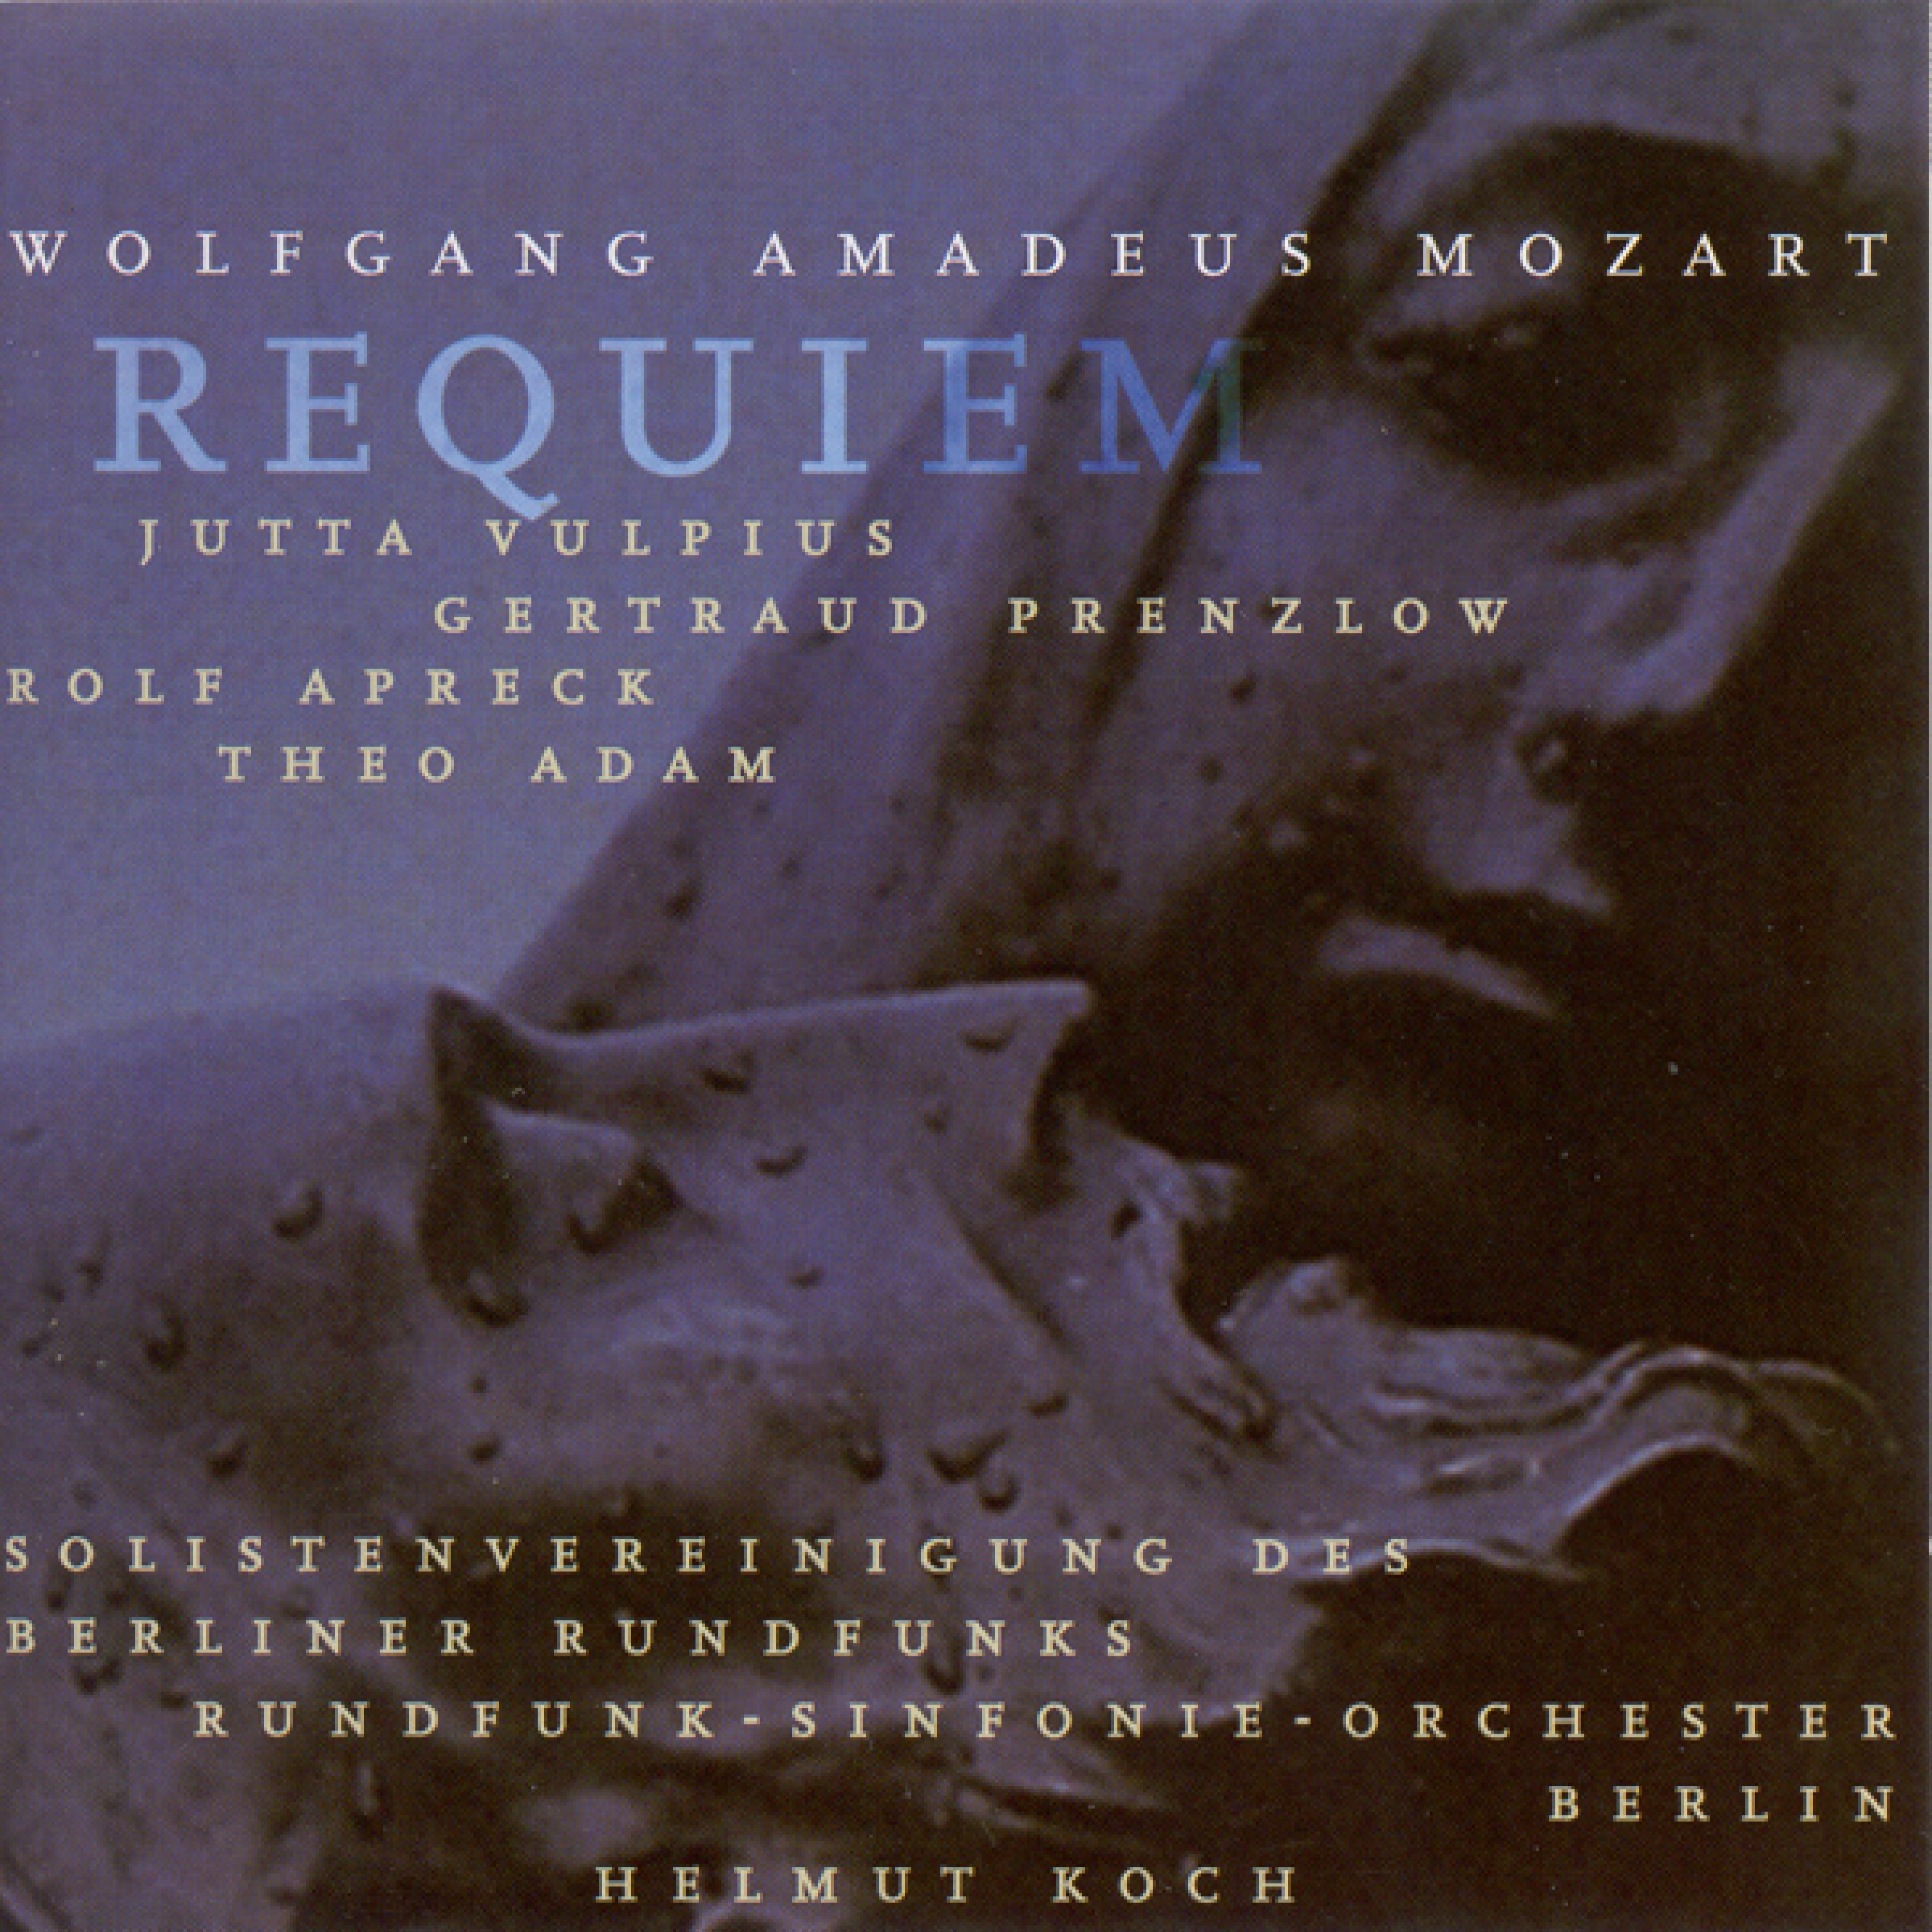 Requiem in D Minor, K. 626: Sequence No. 6, Lacrimosa dies illa